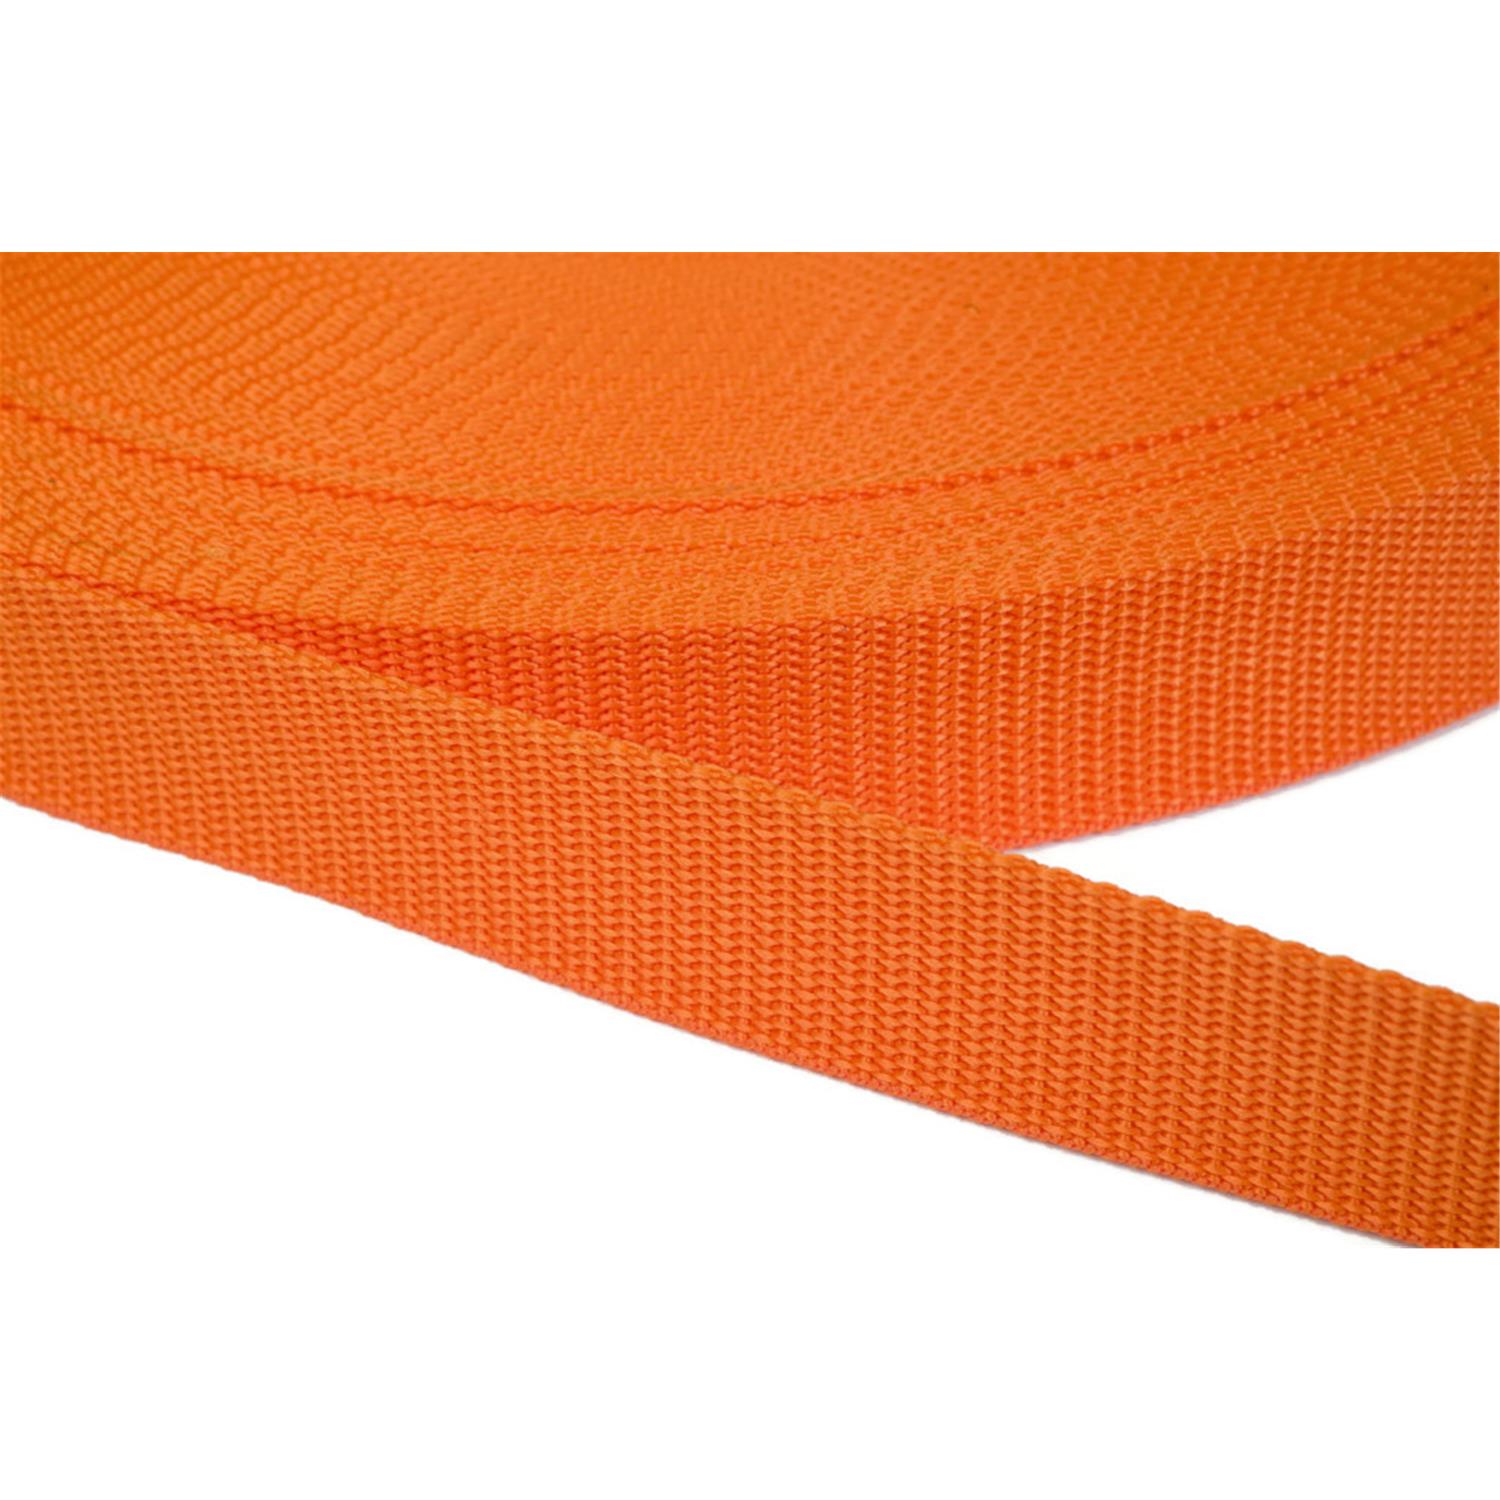 Gurtband 40mm breit aus Polypropylen in 41 Farben 11 - orange 50 Meter